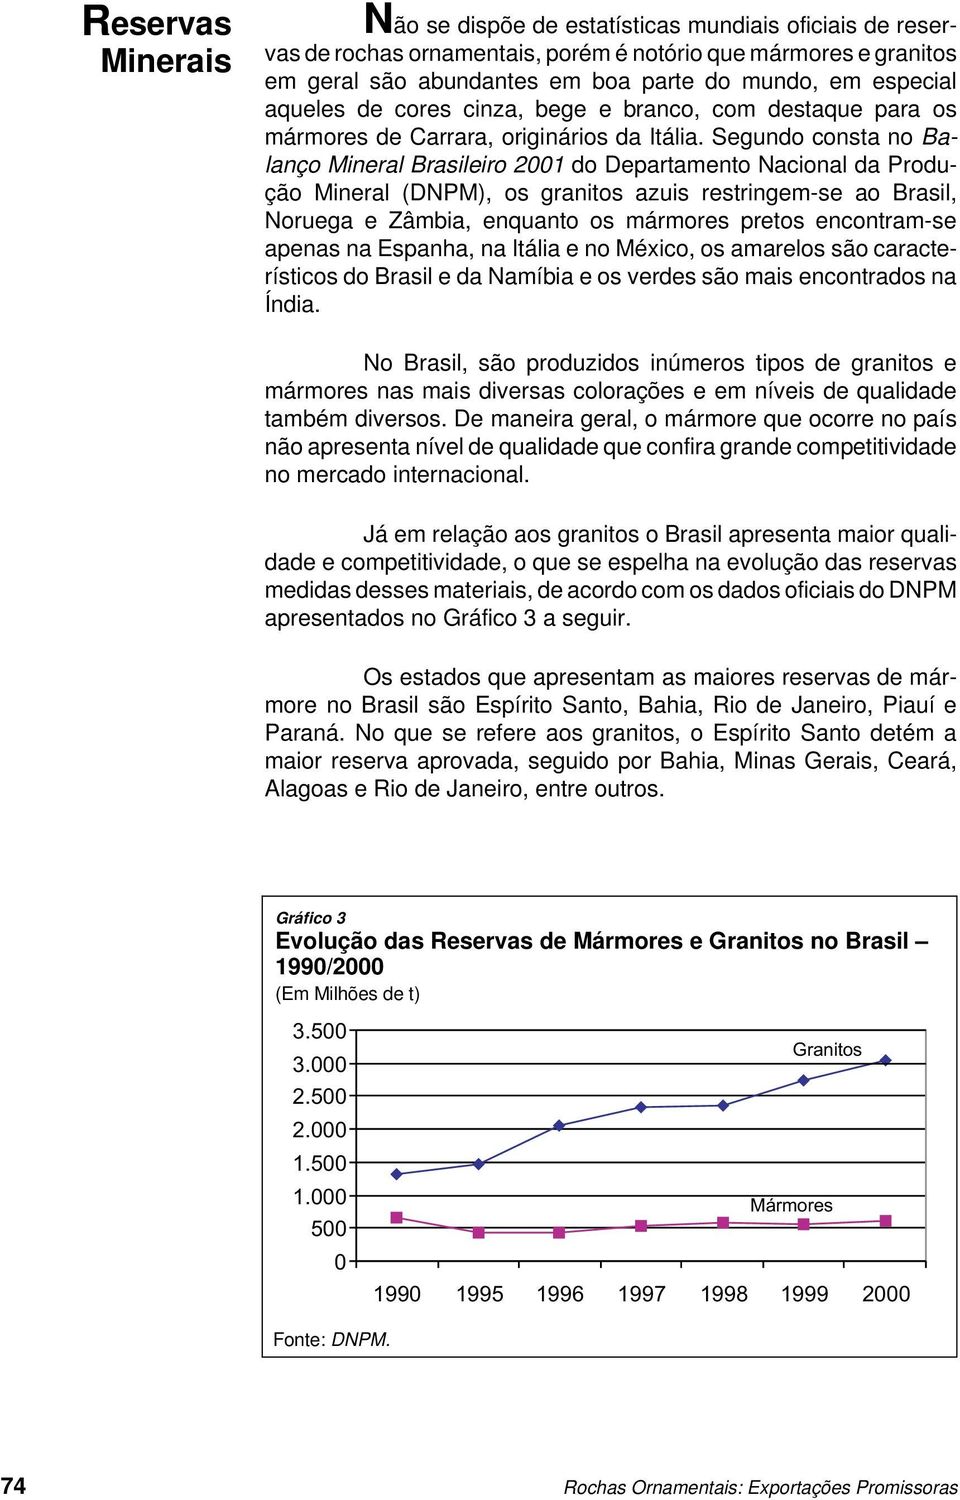 Segundo consta no Balanço Mineral Brasileiro 2001 do Departamento Nacional da Produção Mineral (DNPM), os granitos azuis restringem-se ao Brasil, Noruega e Zâmbia, enquanto os mármores pretos